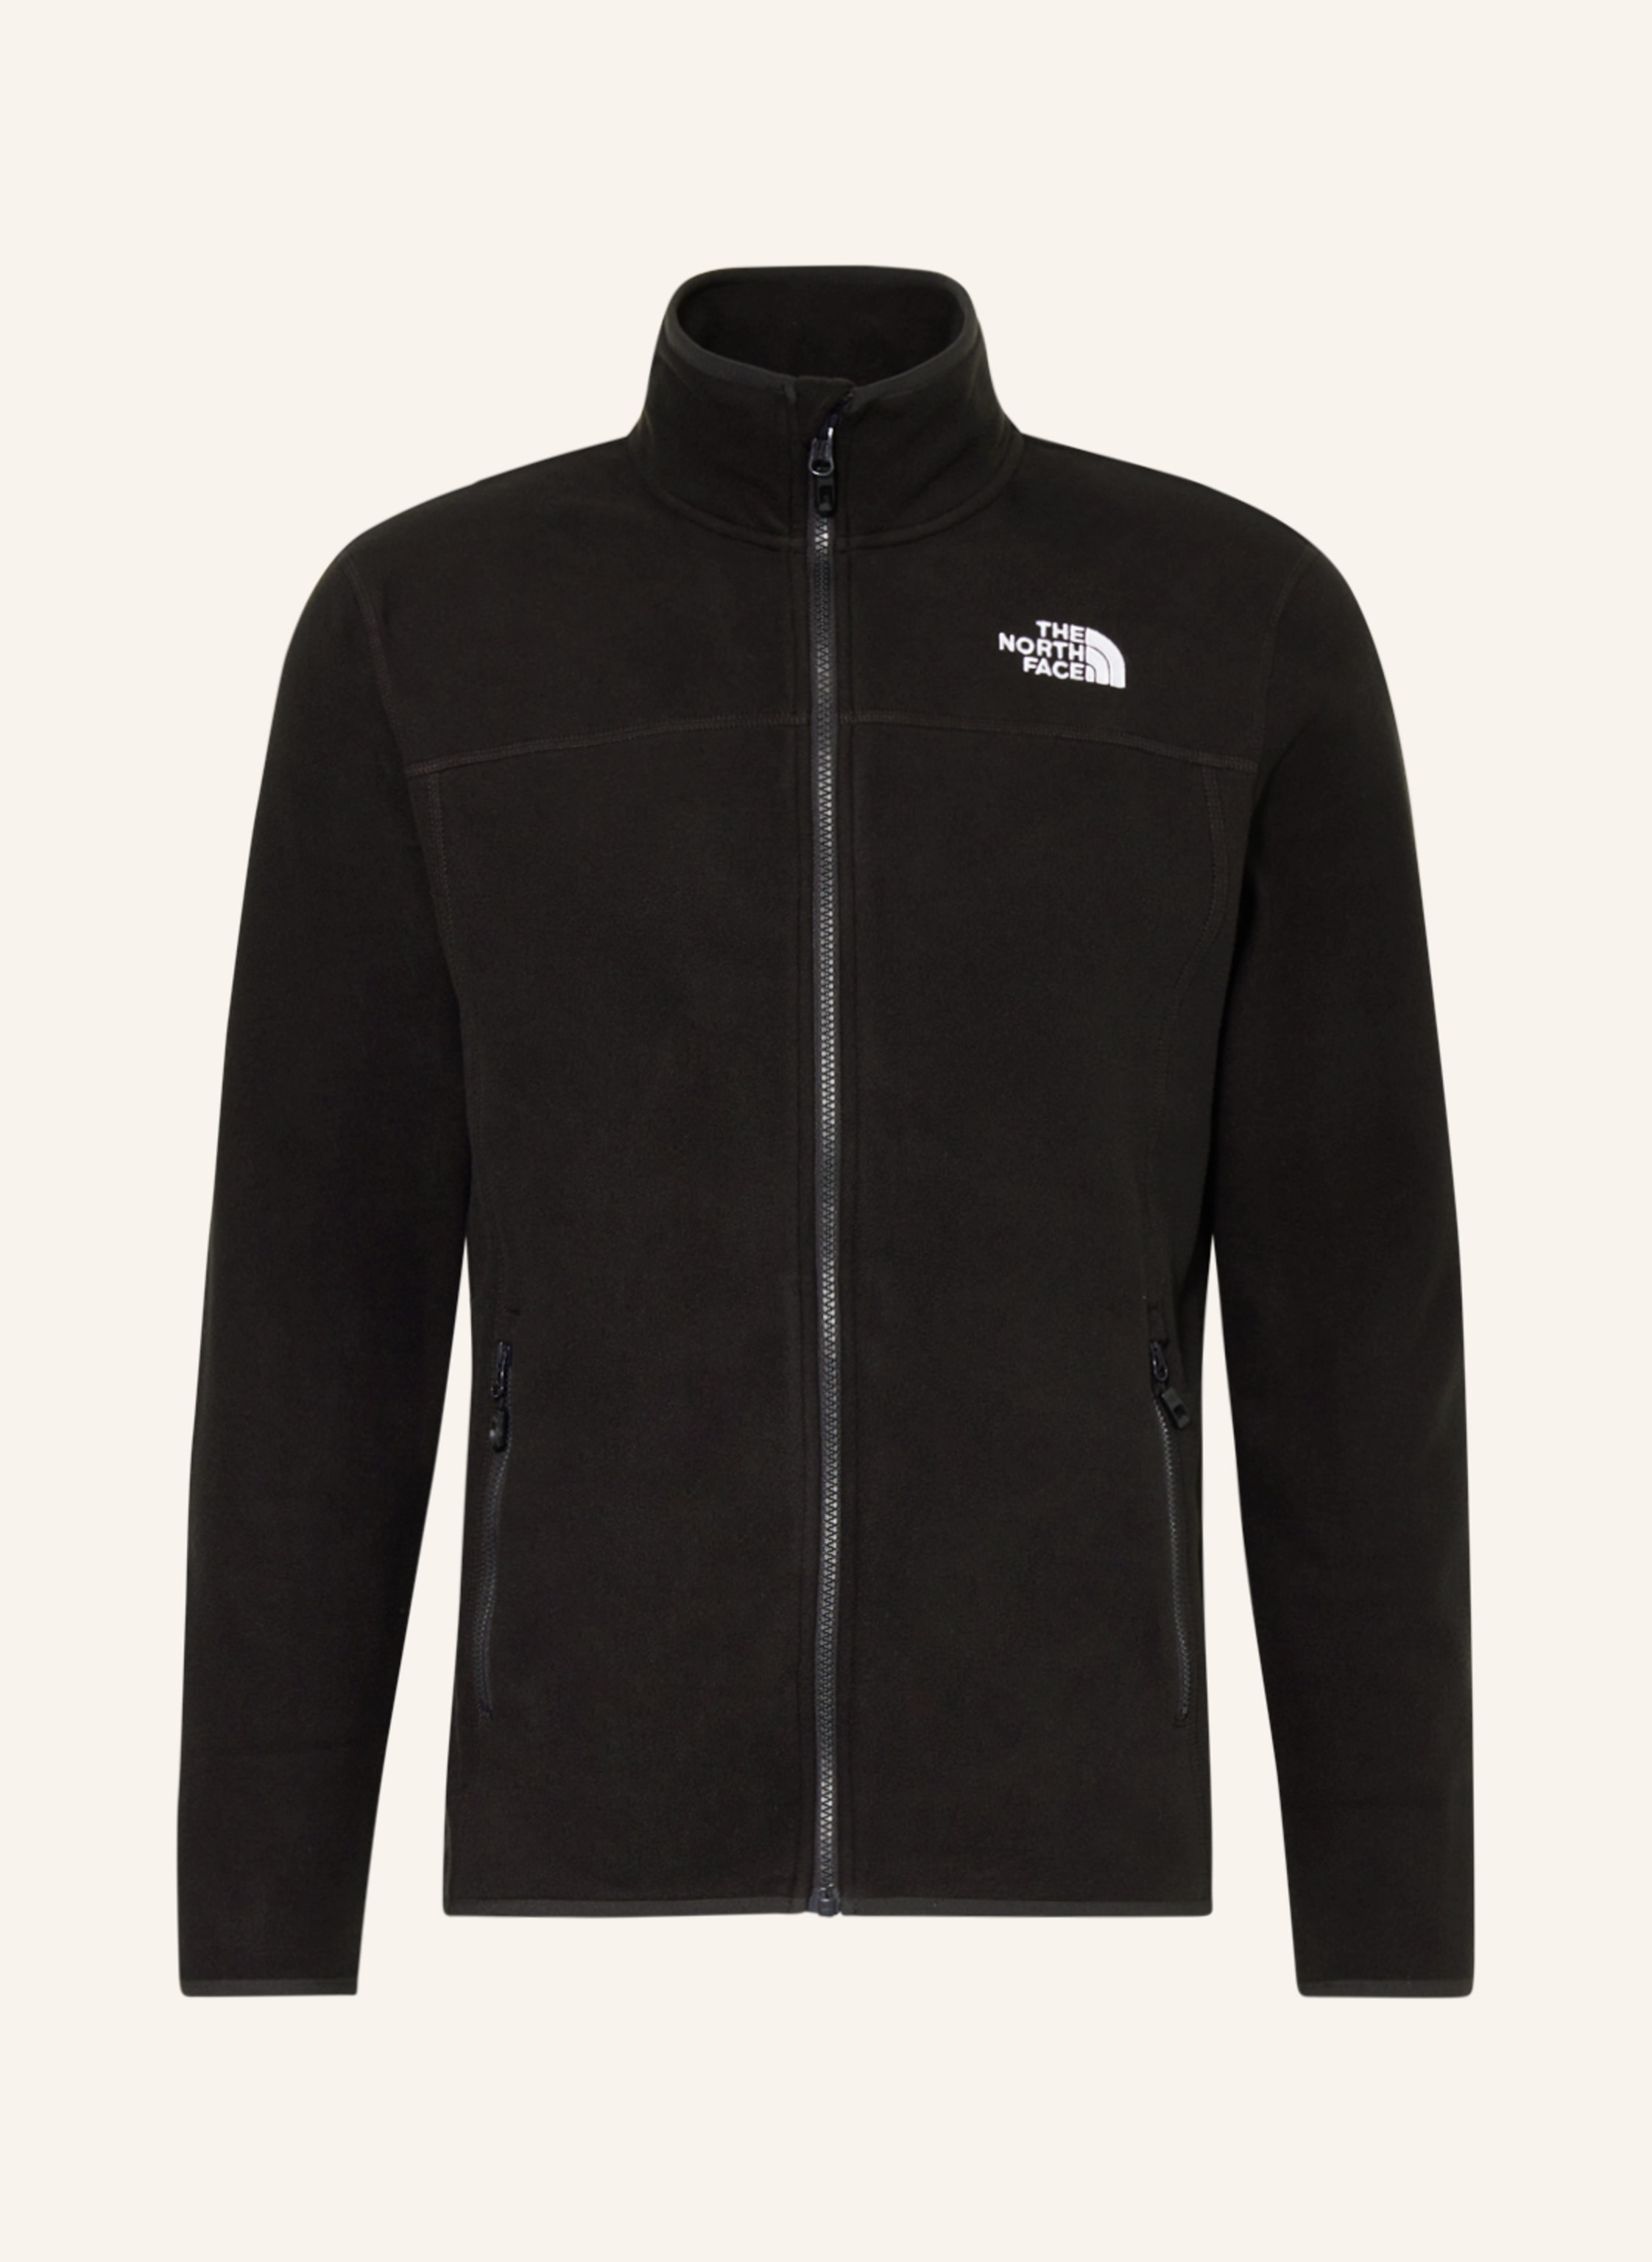 THE NORTH FACE Fleece jacket 100 GLACIER in black